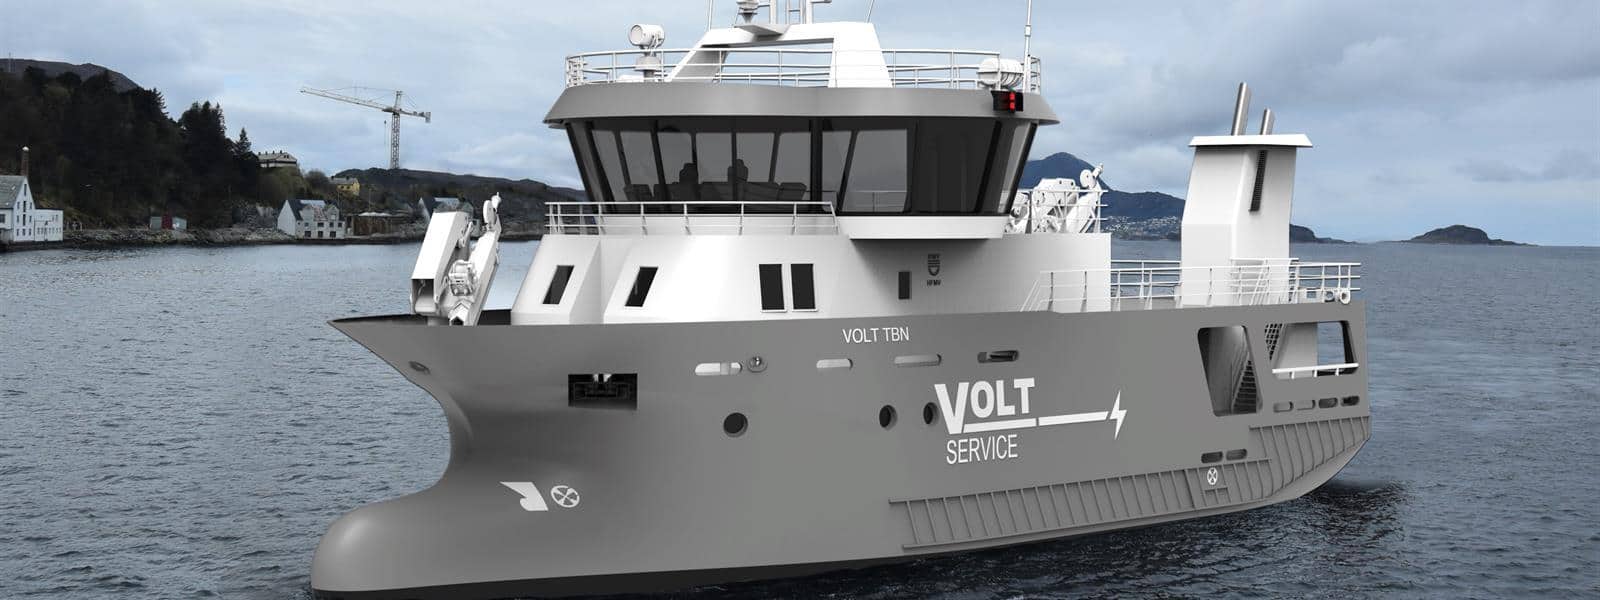 Norsk udviklet proces-båd vil få en slagte-kapacitet på 60 tons fisk i timen